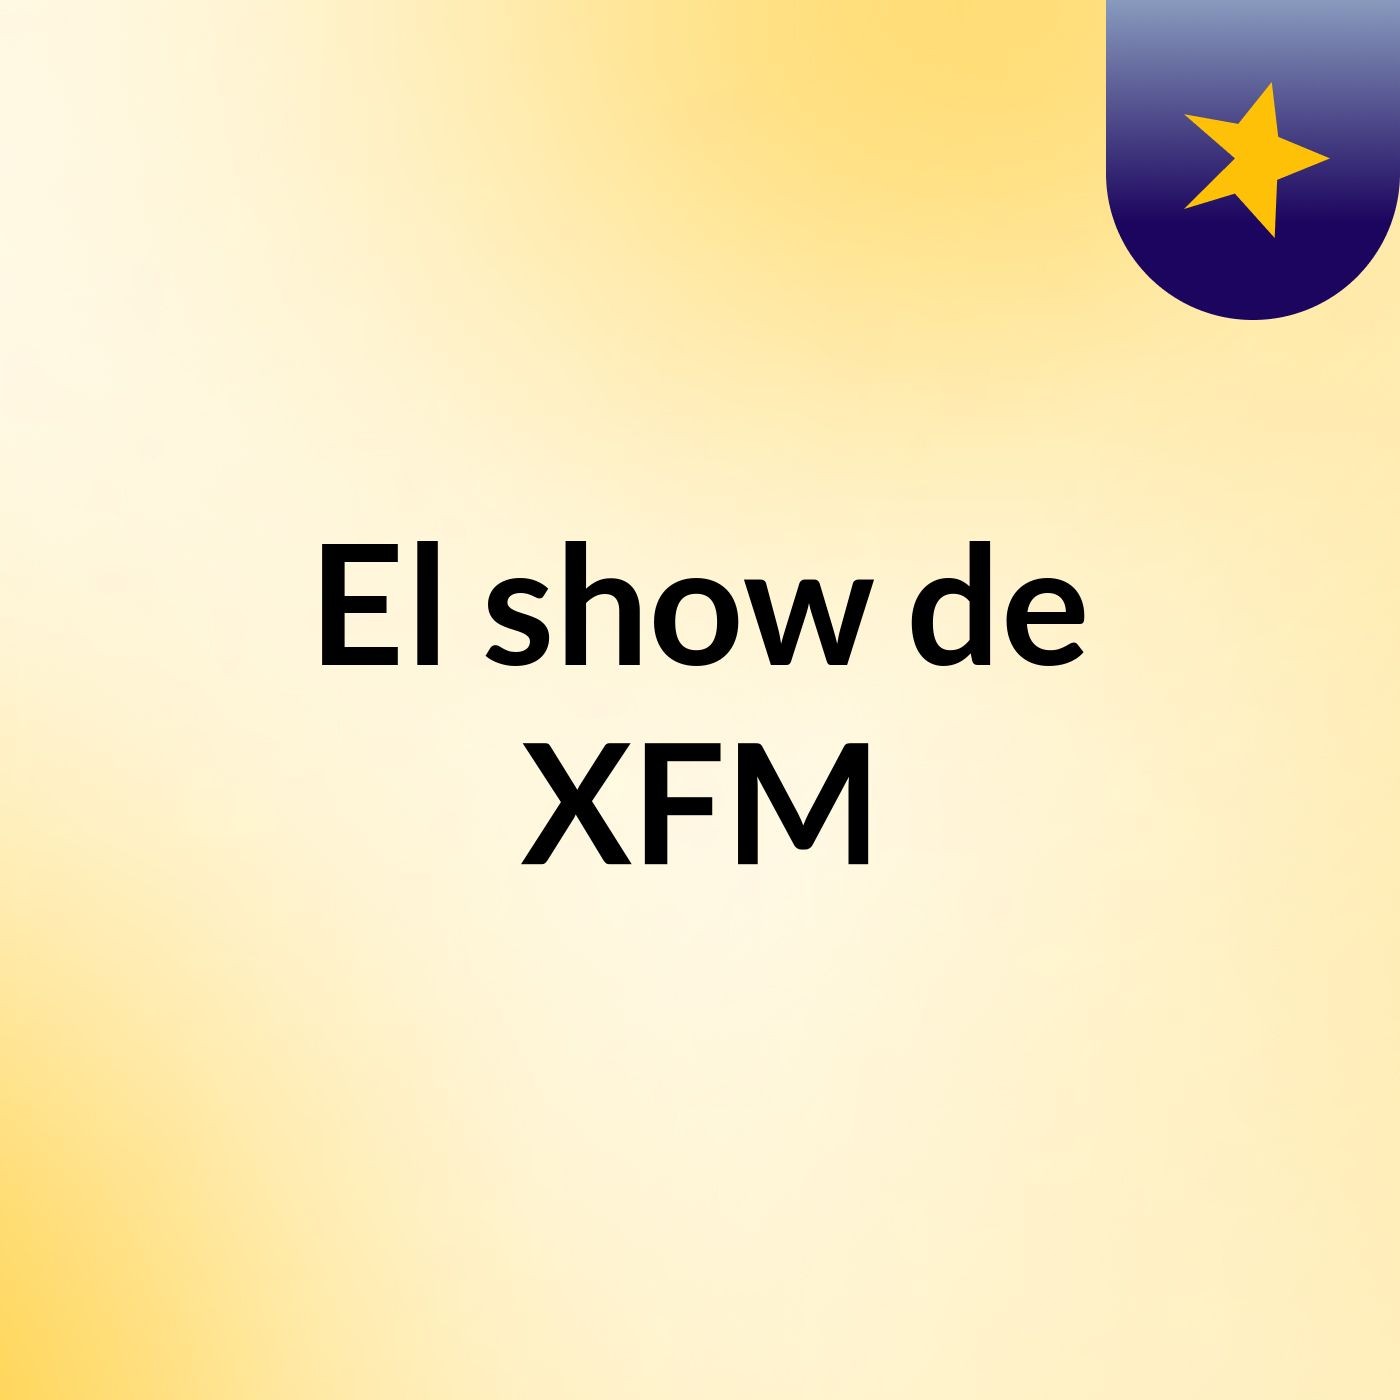 El show de XFM